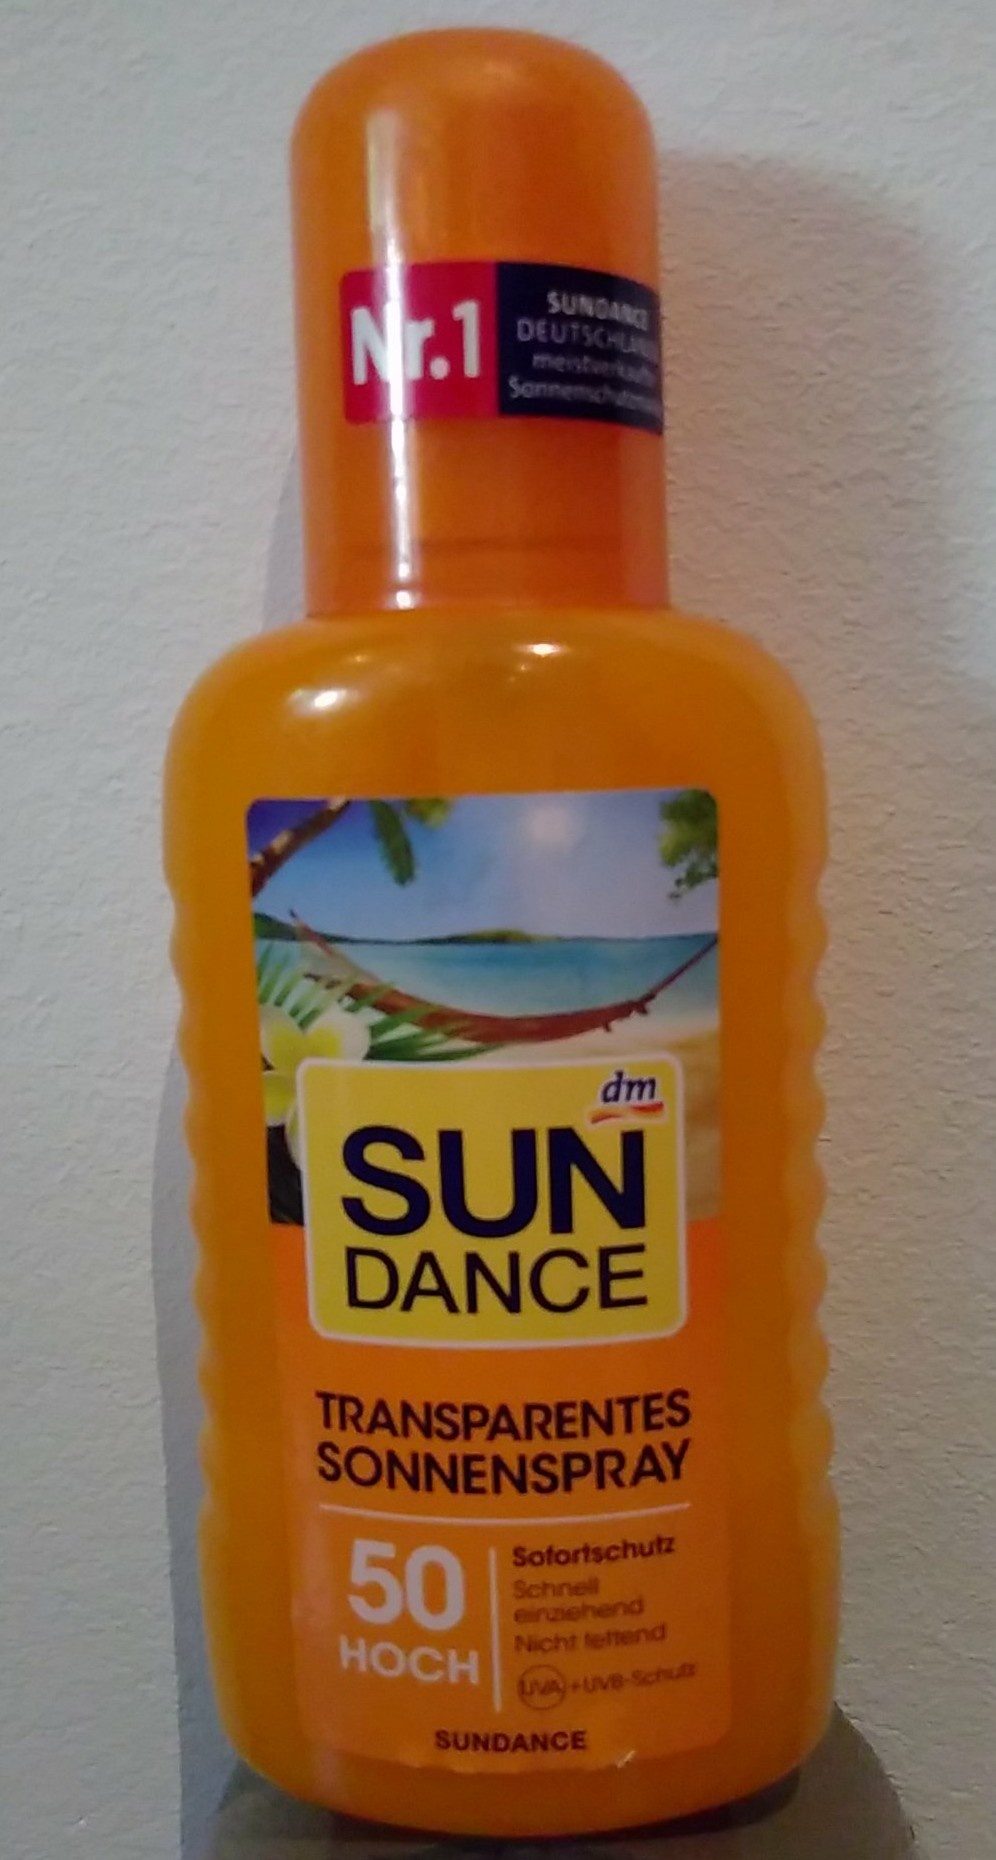 Sun dance transparentes Sonnenspray - Tuote - fr